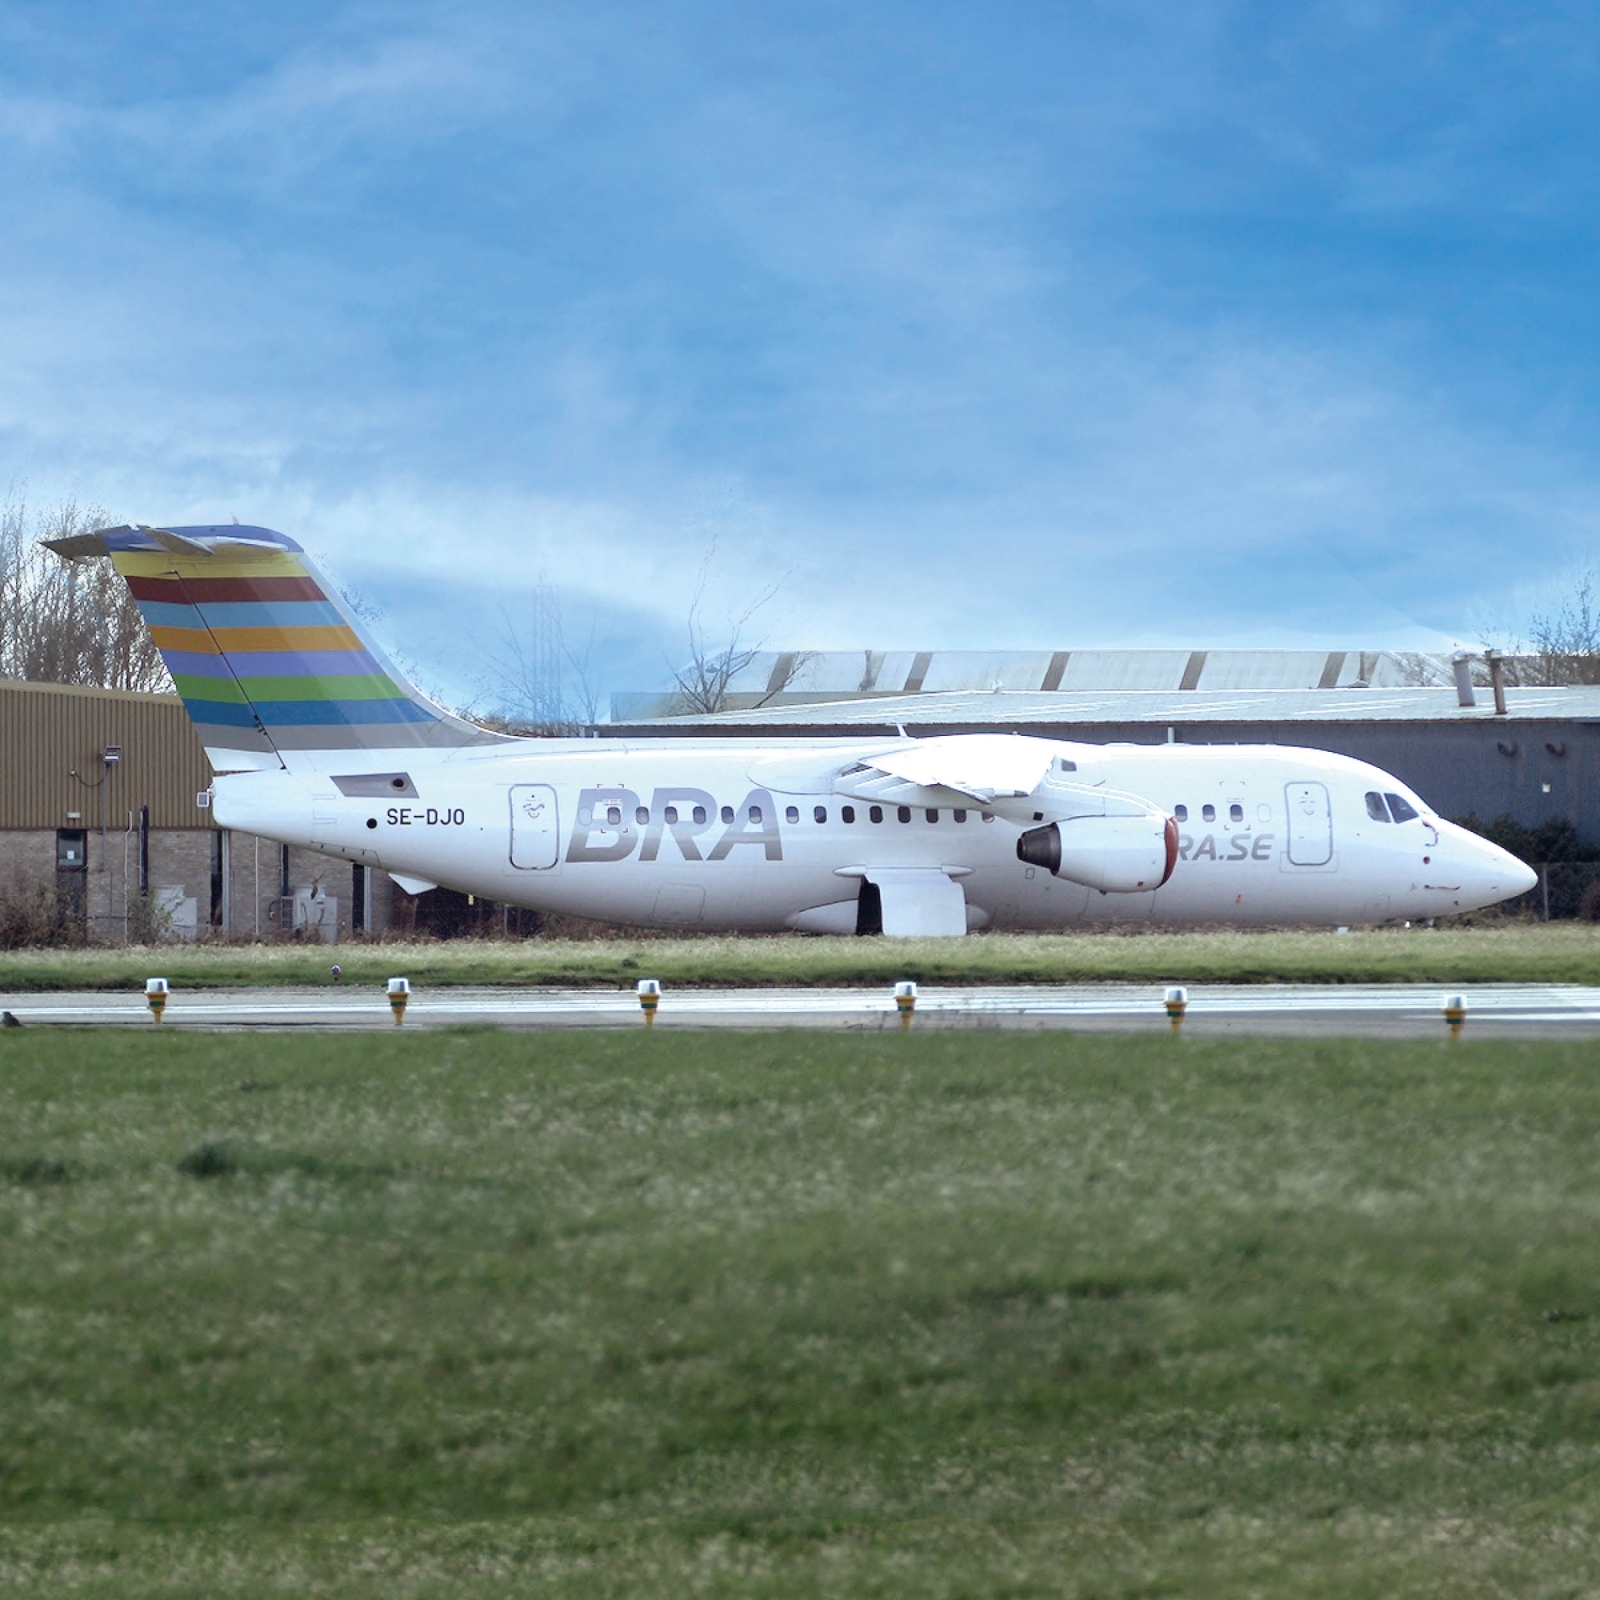 Aviationtag Braathens - BAE Avro RJ85 - SE-DJO White